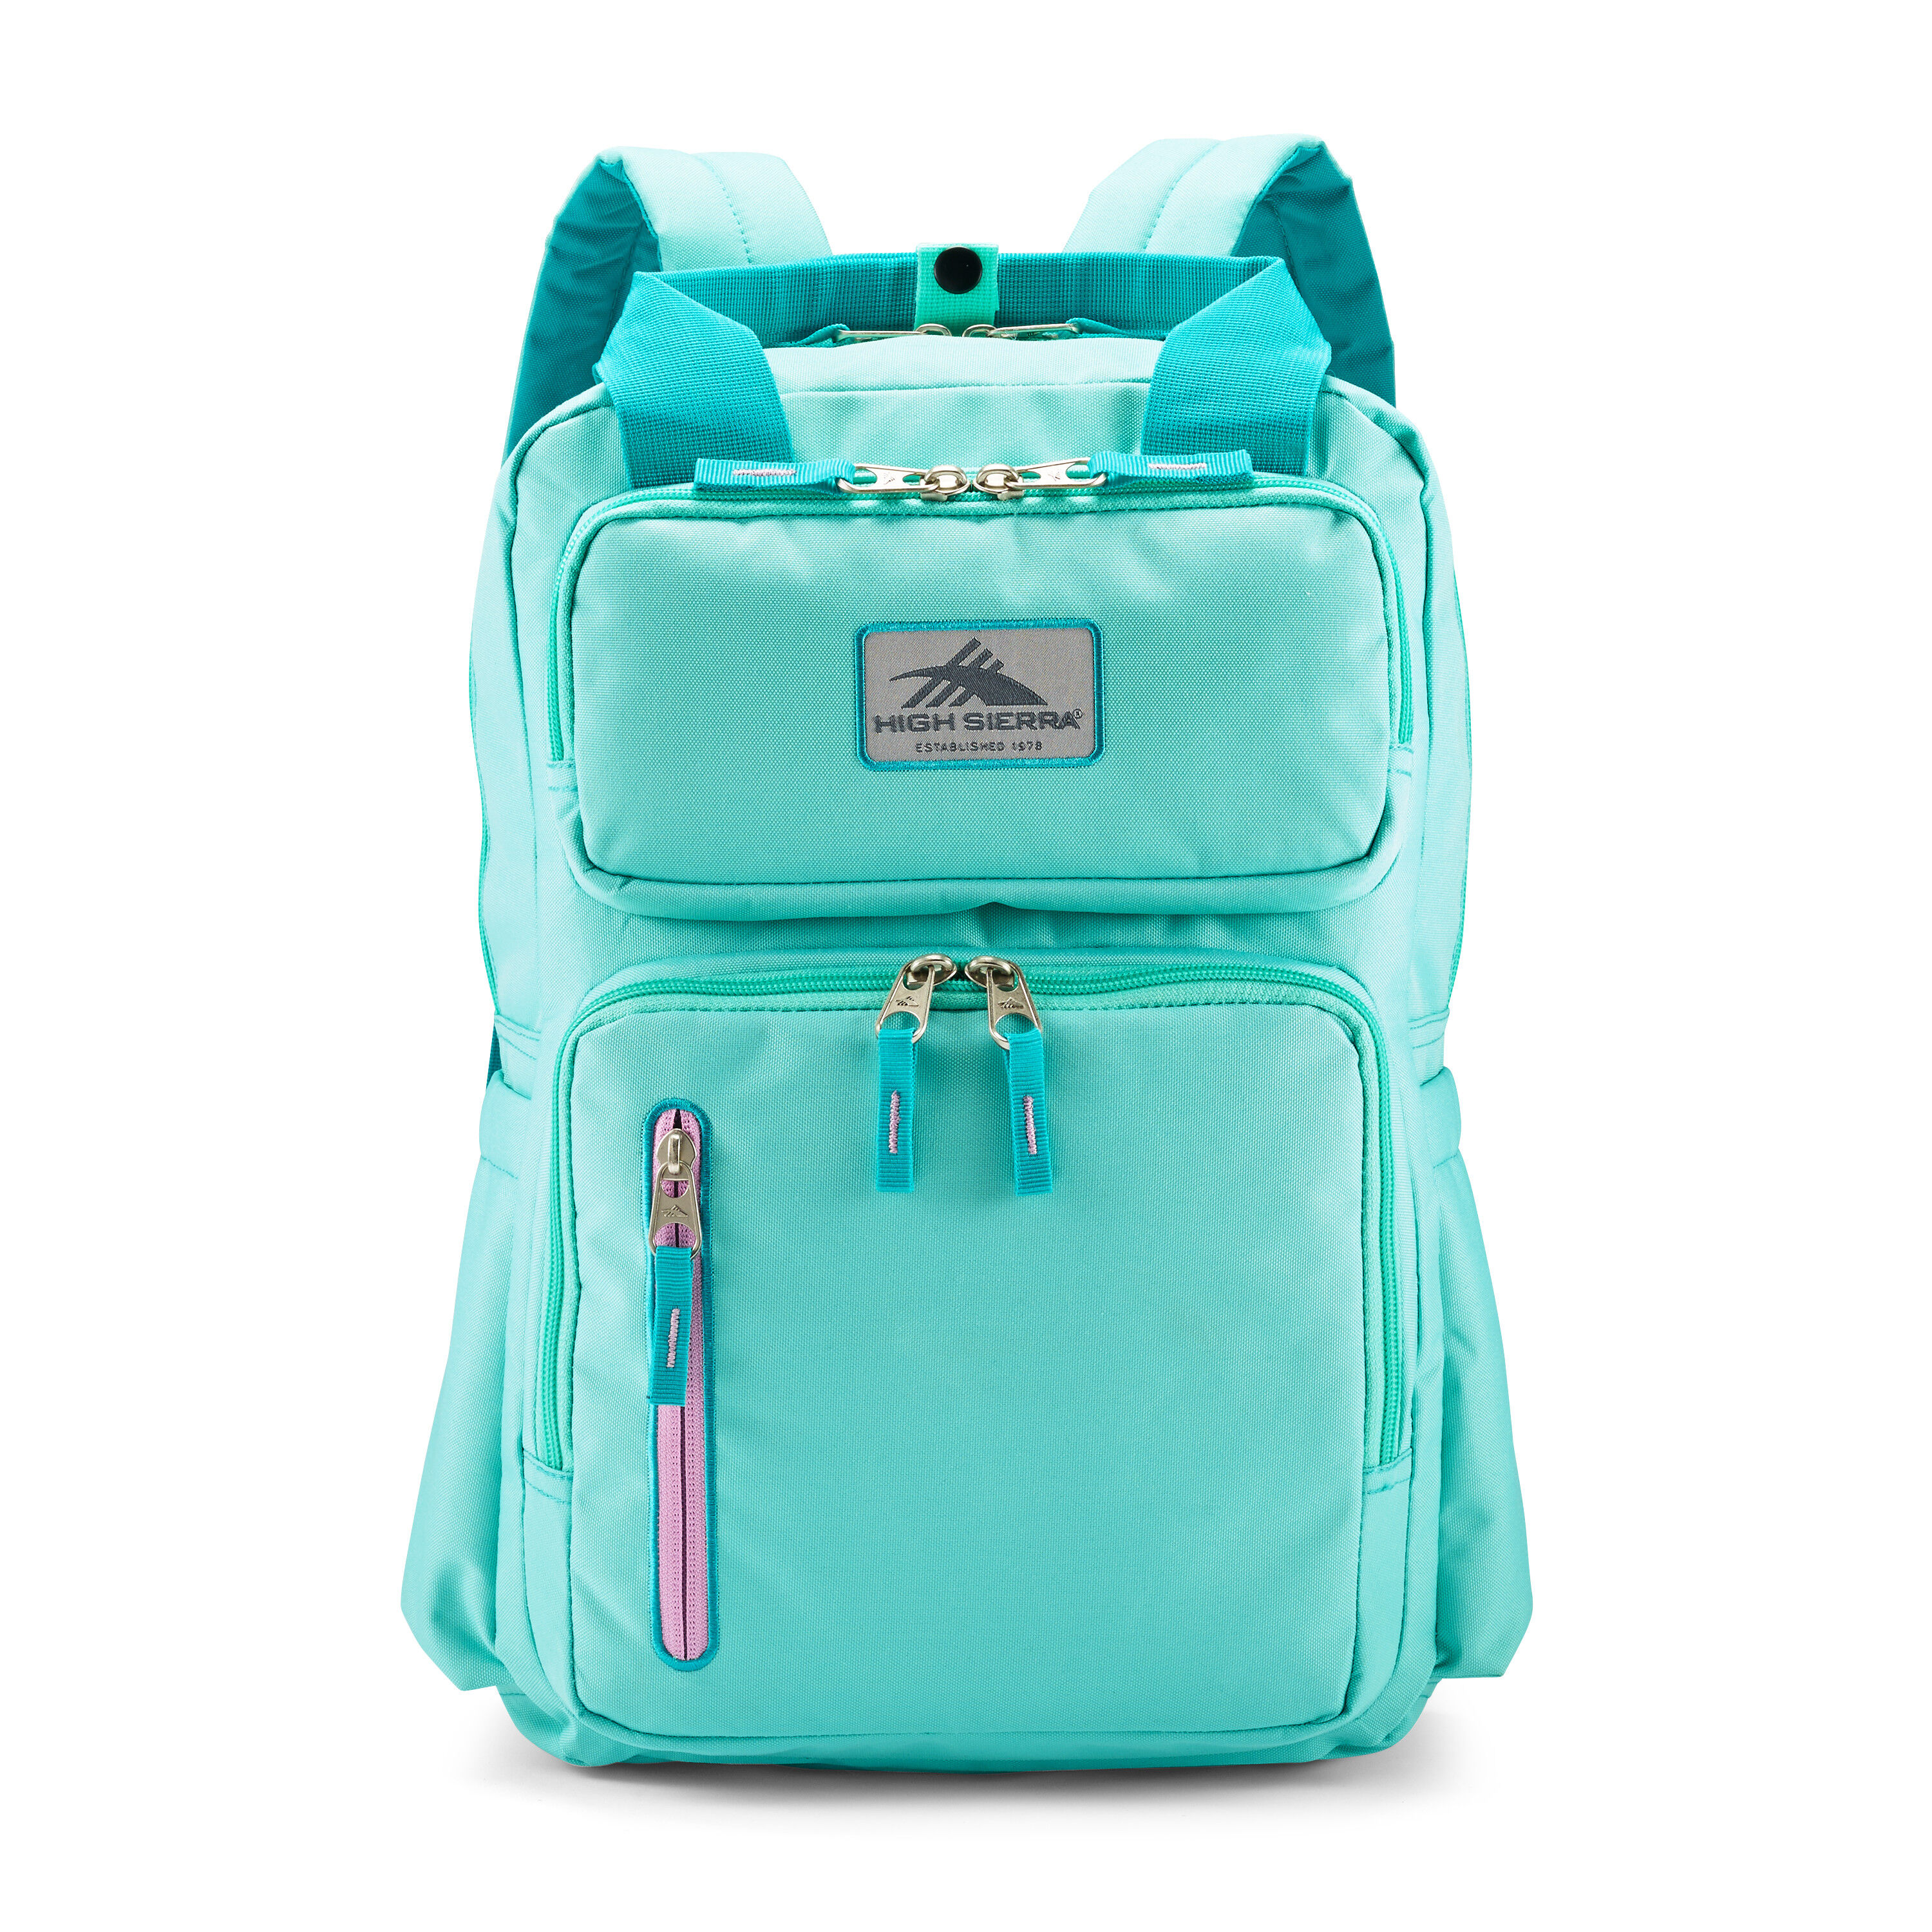 Buy Mindie Backpack for N/A 0.0 | High Sierra